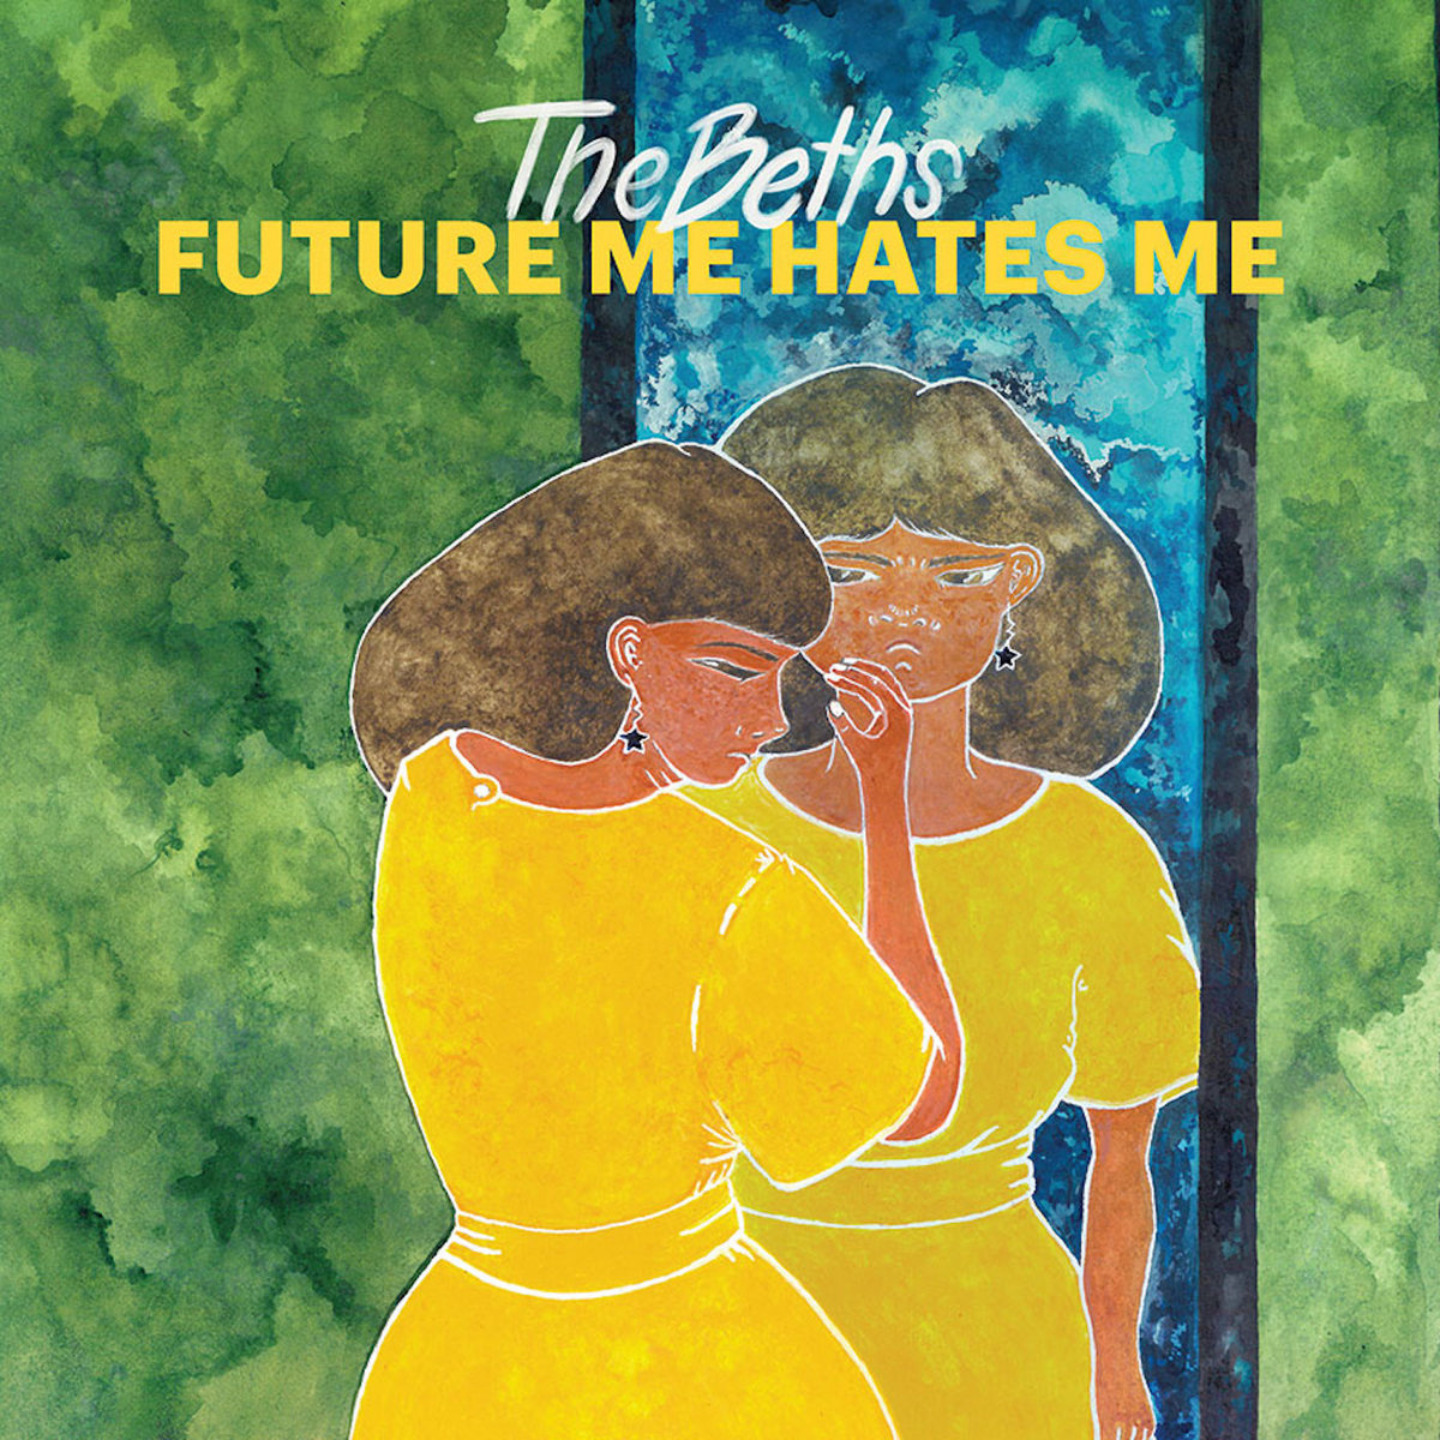 BETHS, THE - Future Me Hates Me LP (Baby Blue Vinyl)